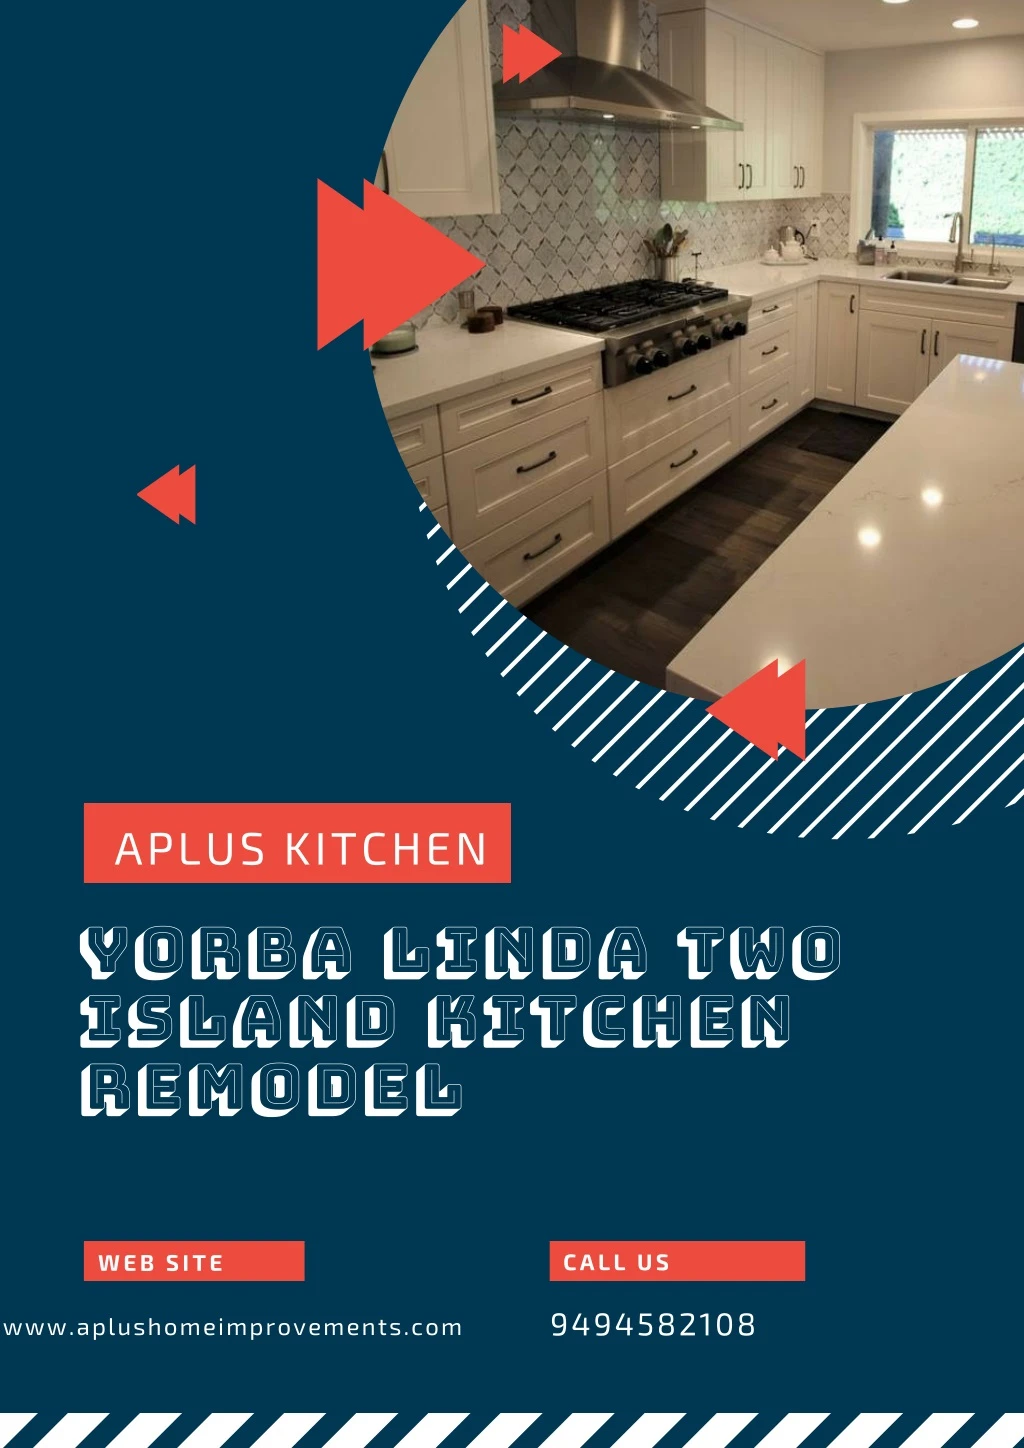 aplus kitchen